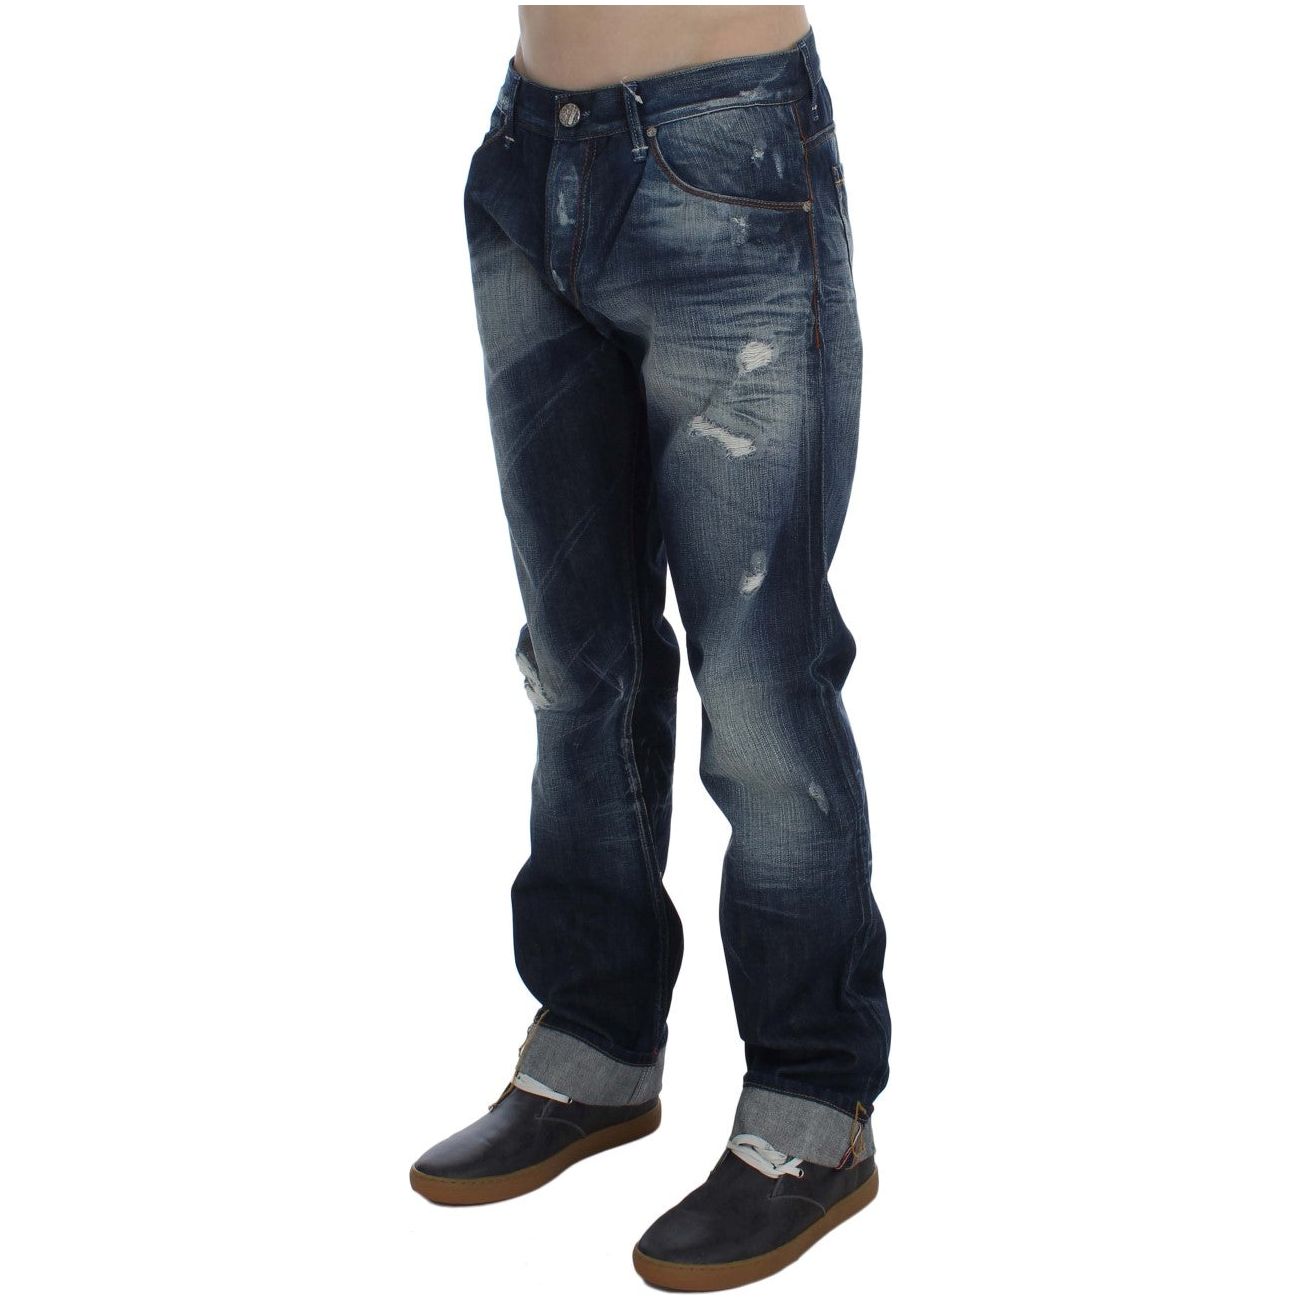 Acht Authentic Regular Fit Blue Wash Jeans blue-wash-cotton-denim-regular-fit-jeans-2 292687-blue-wash-cotton-denim-regular-fit-jeans-4-2.jpg